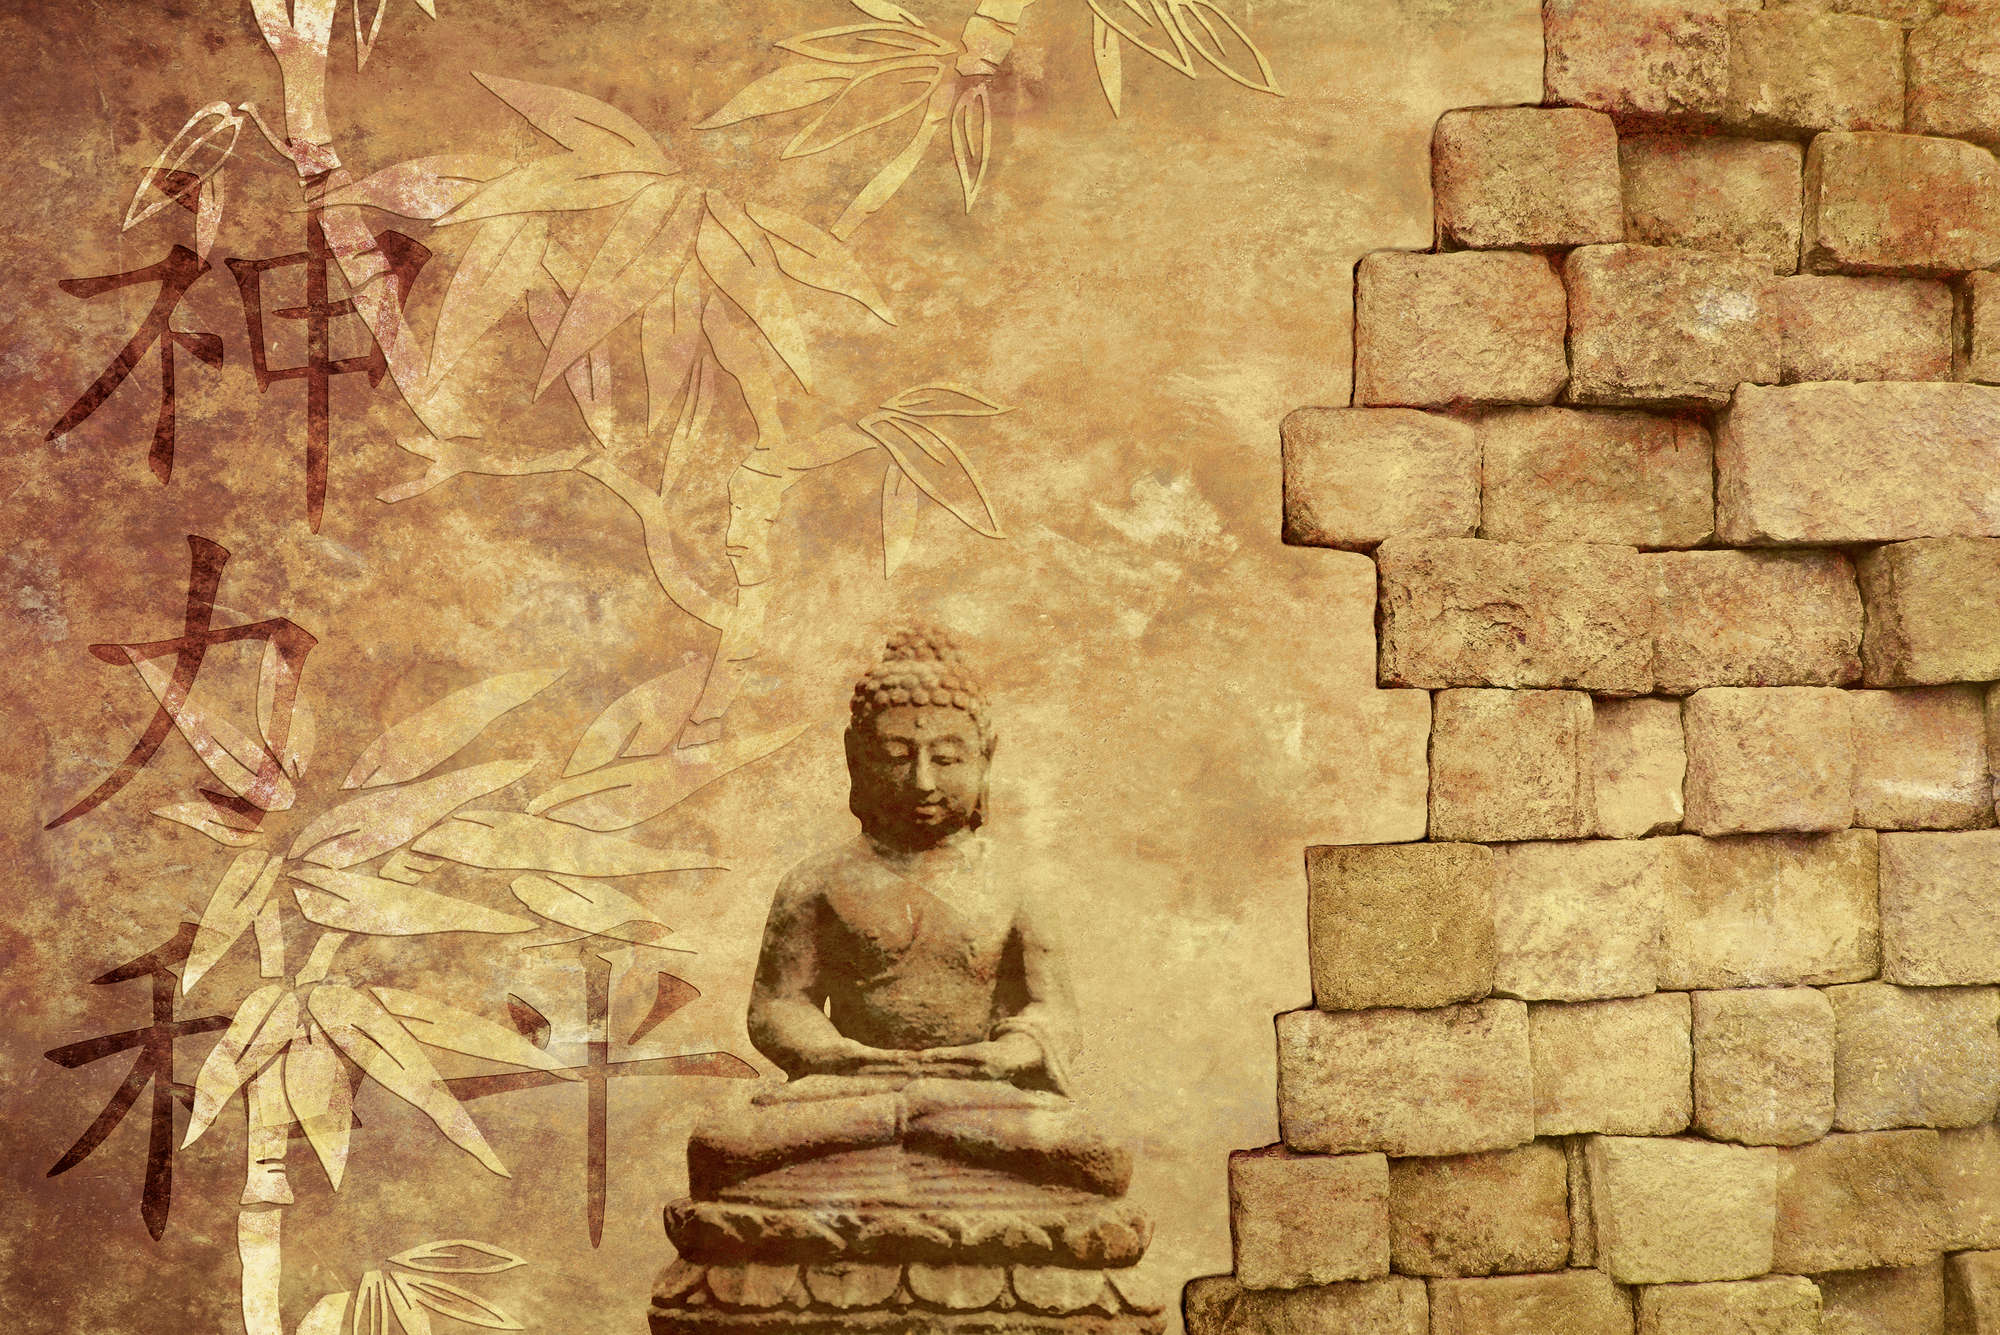             Fotomural con figura de Buda - tejido no tejido liso de alta calidad
        